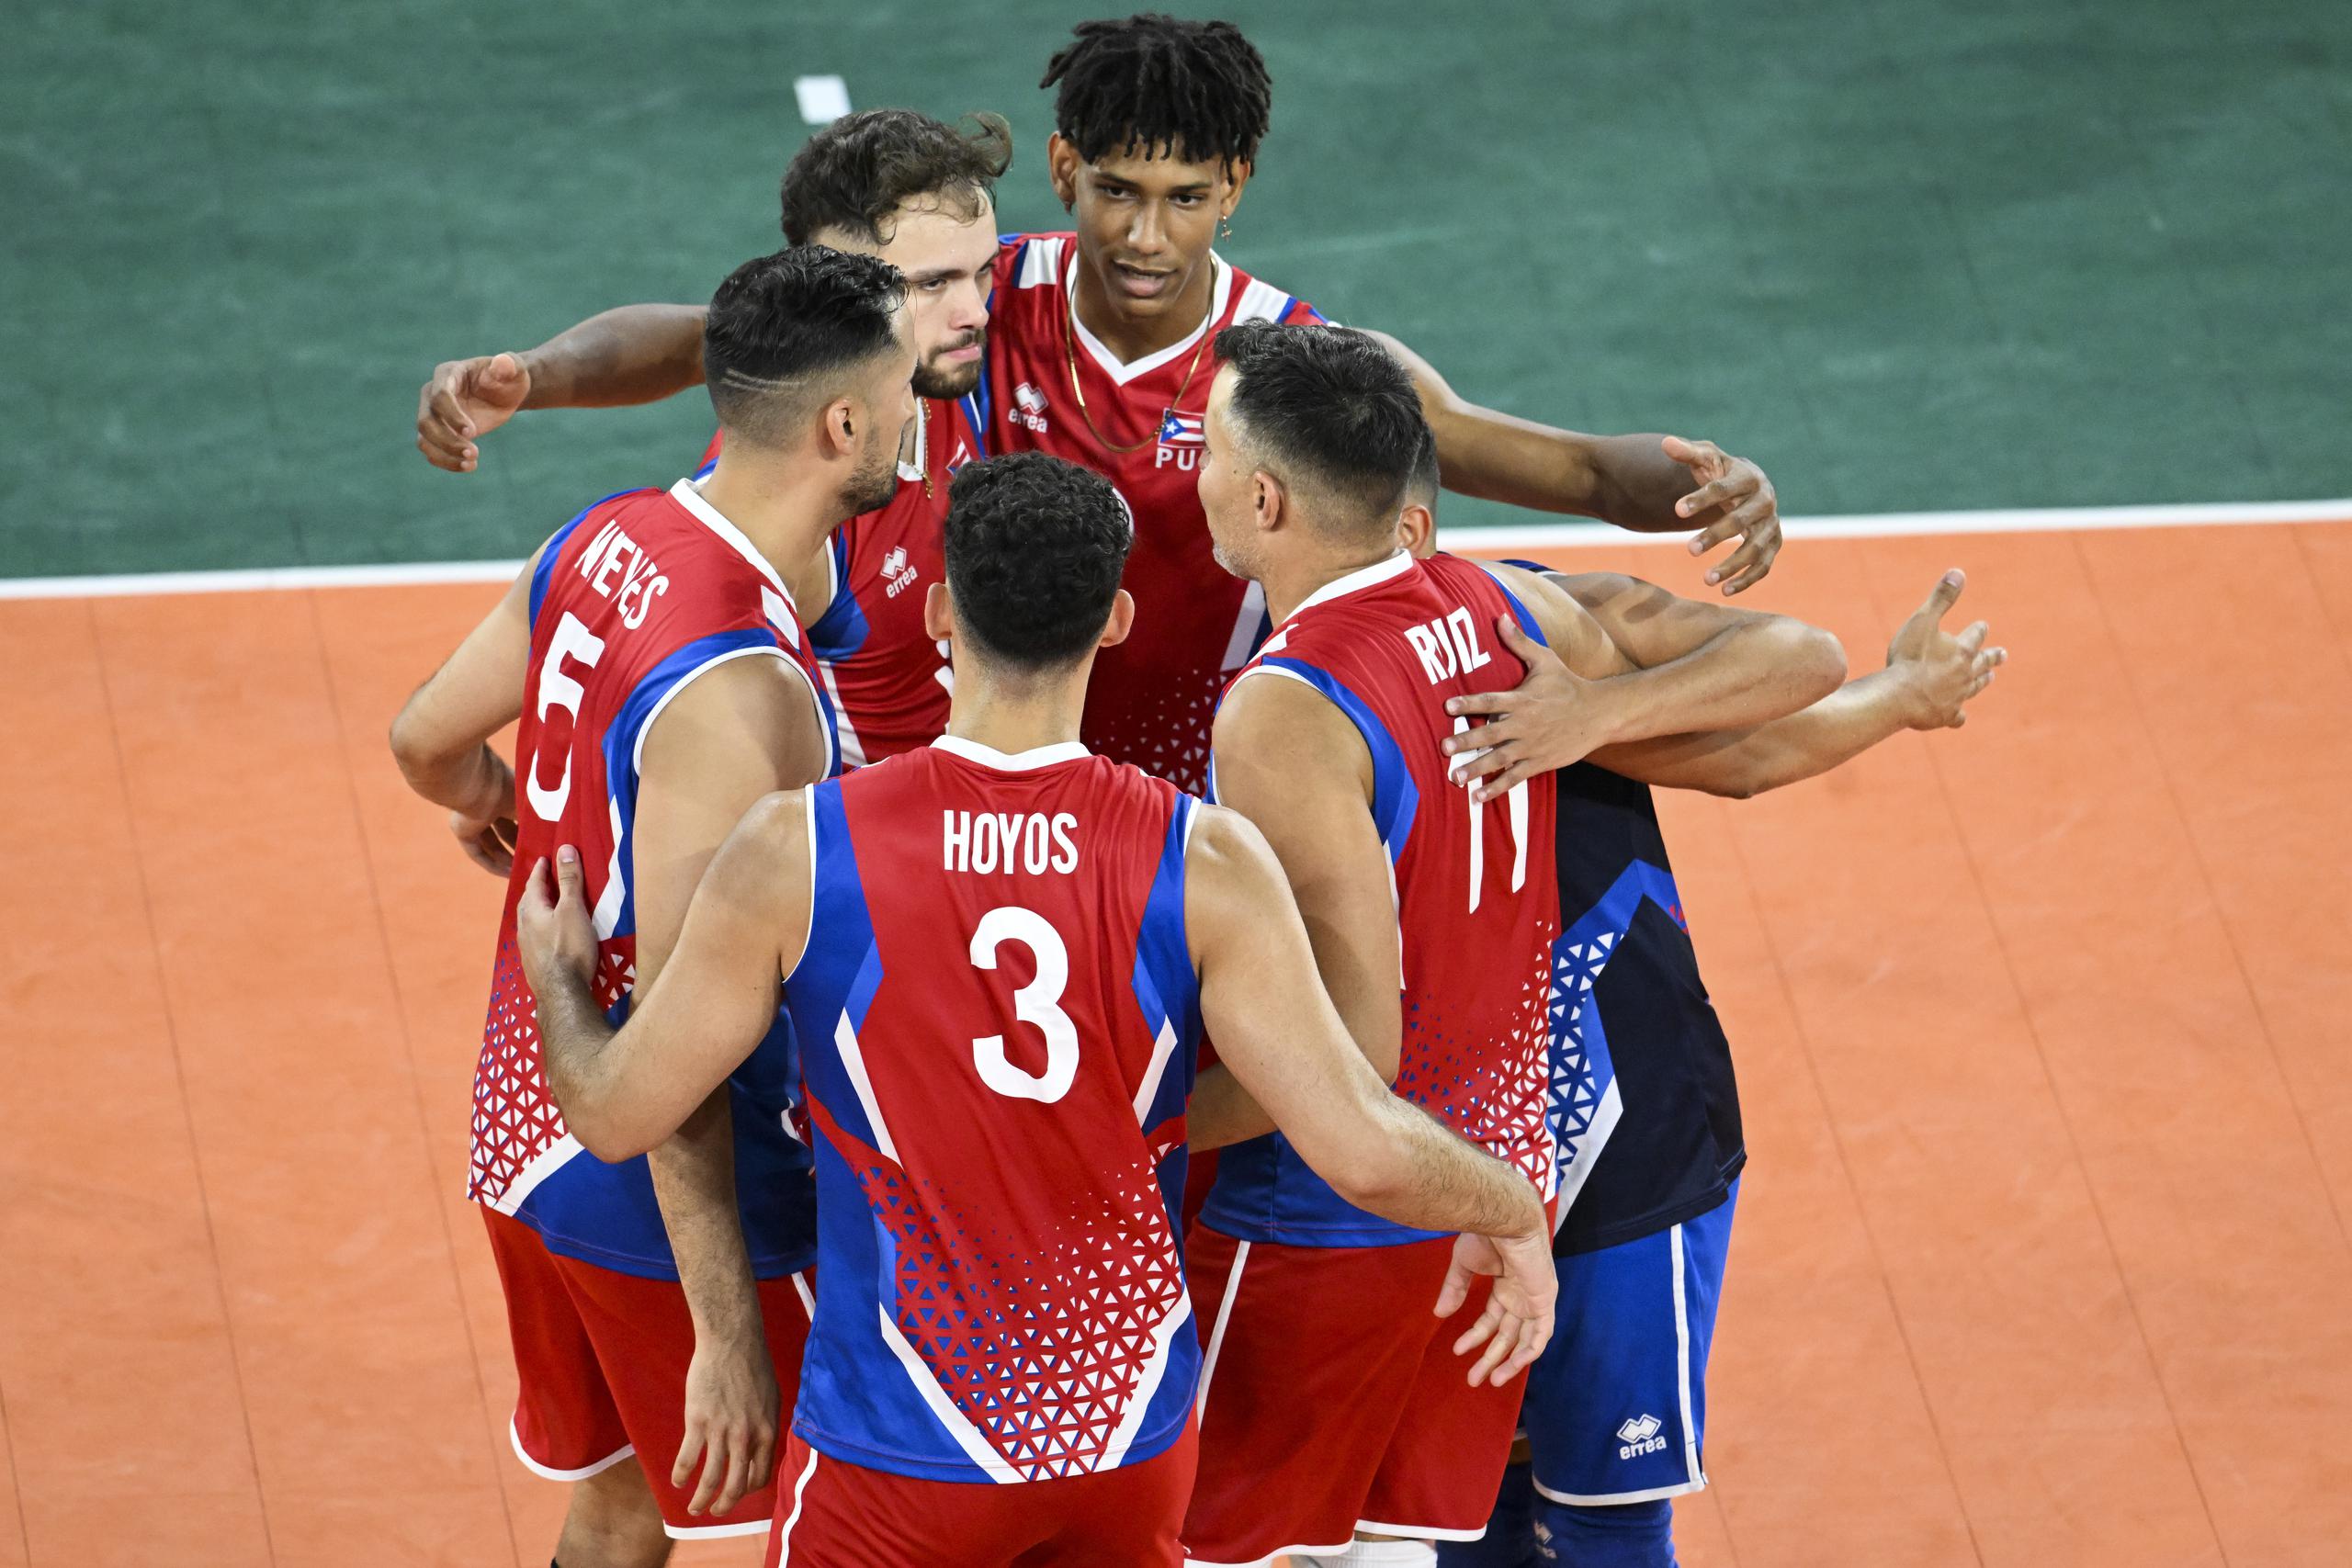 La Selección Nacional de Voleibol celebra un puntos sobre Trinidad y Tobago para instalarse en la fase semifinal del torneo.